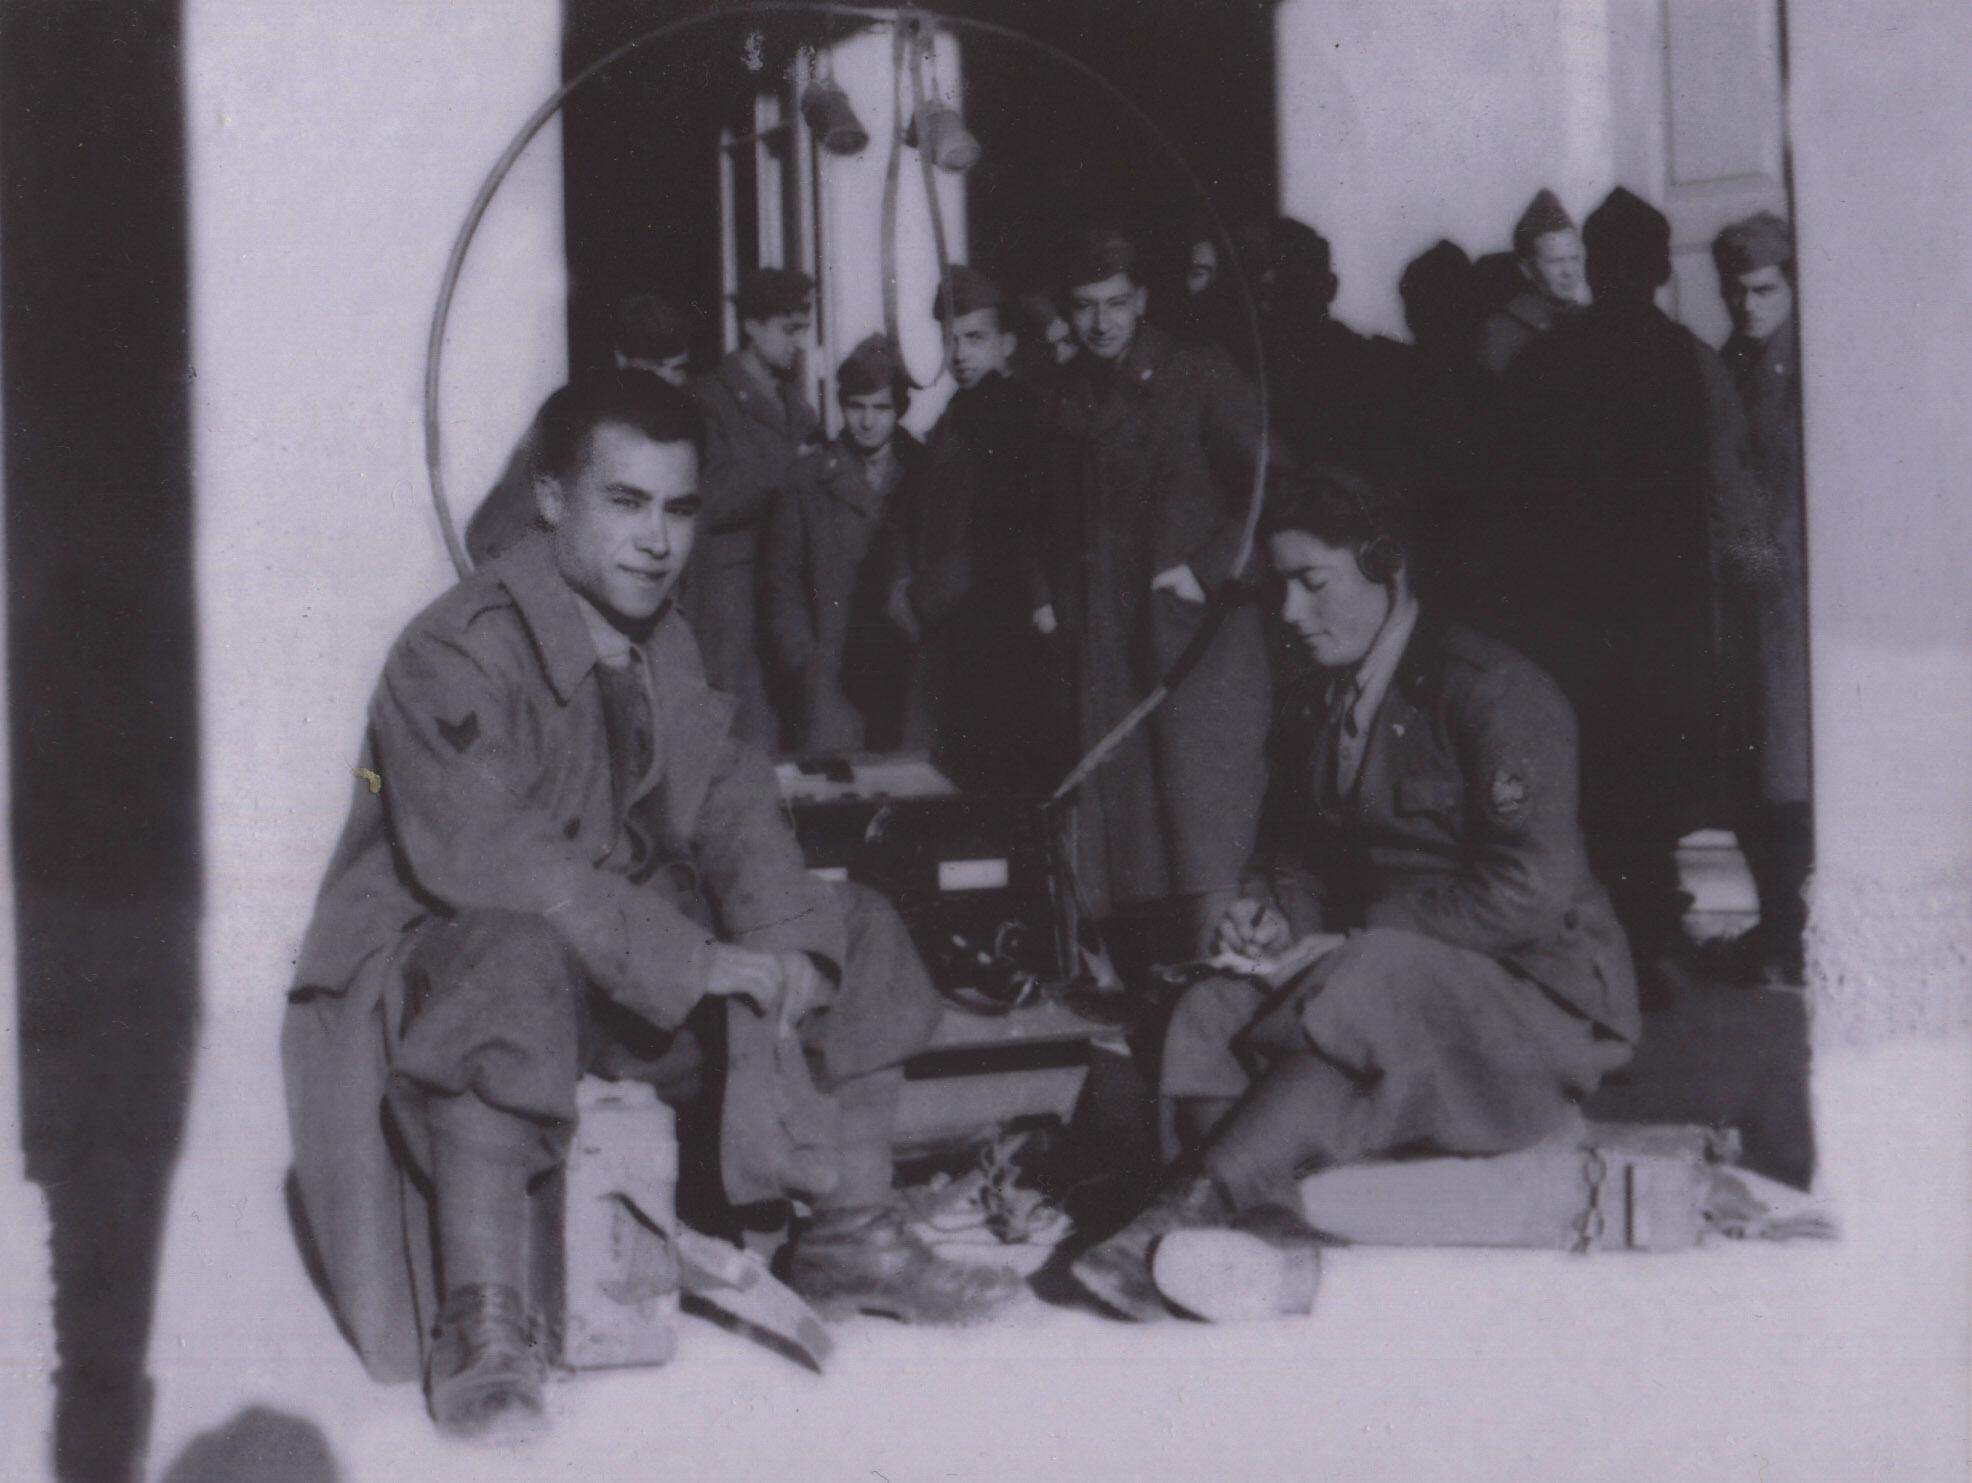 Antonio (seduto a destra) svolge le sue mansioni di marconista, Foto scattata prima della sua cattura.